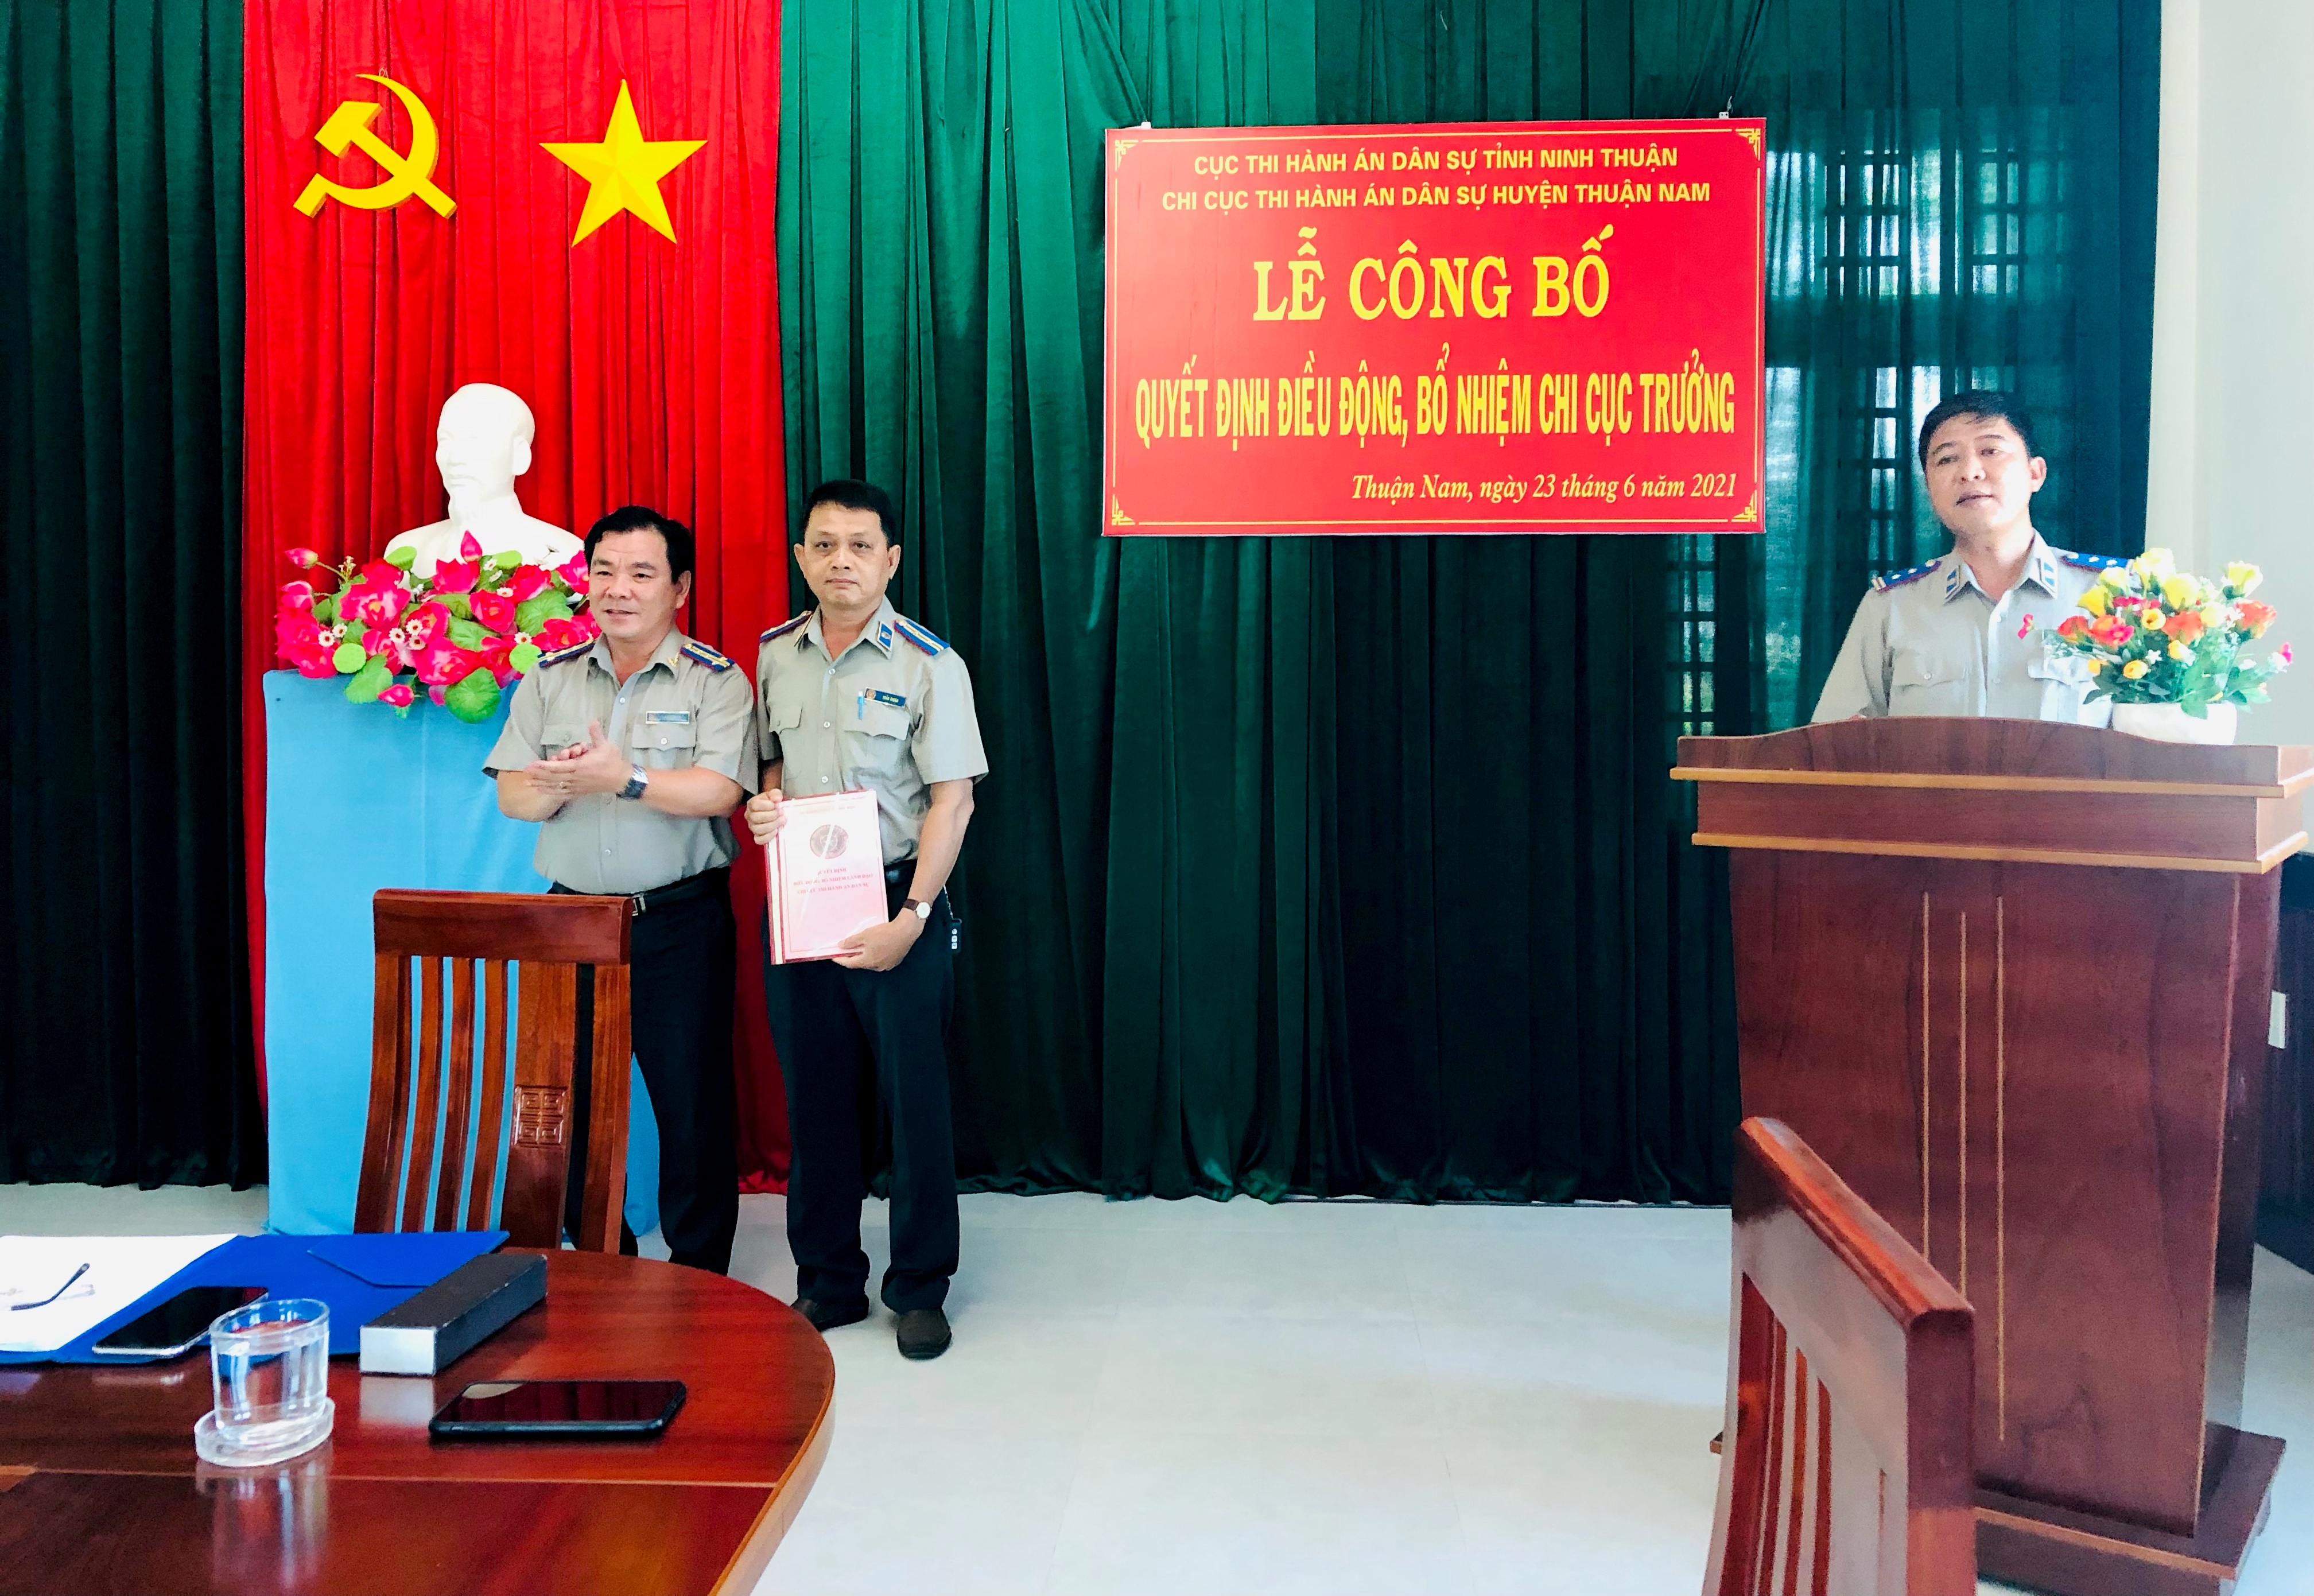 Lễ công bố và trao Quyết định điều động, luân chuyển, bổ nhiệm Chi cục trưởng Chi cục THADS huyện Thuận Nam